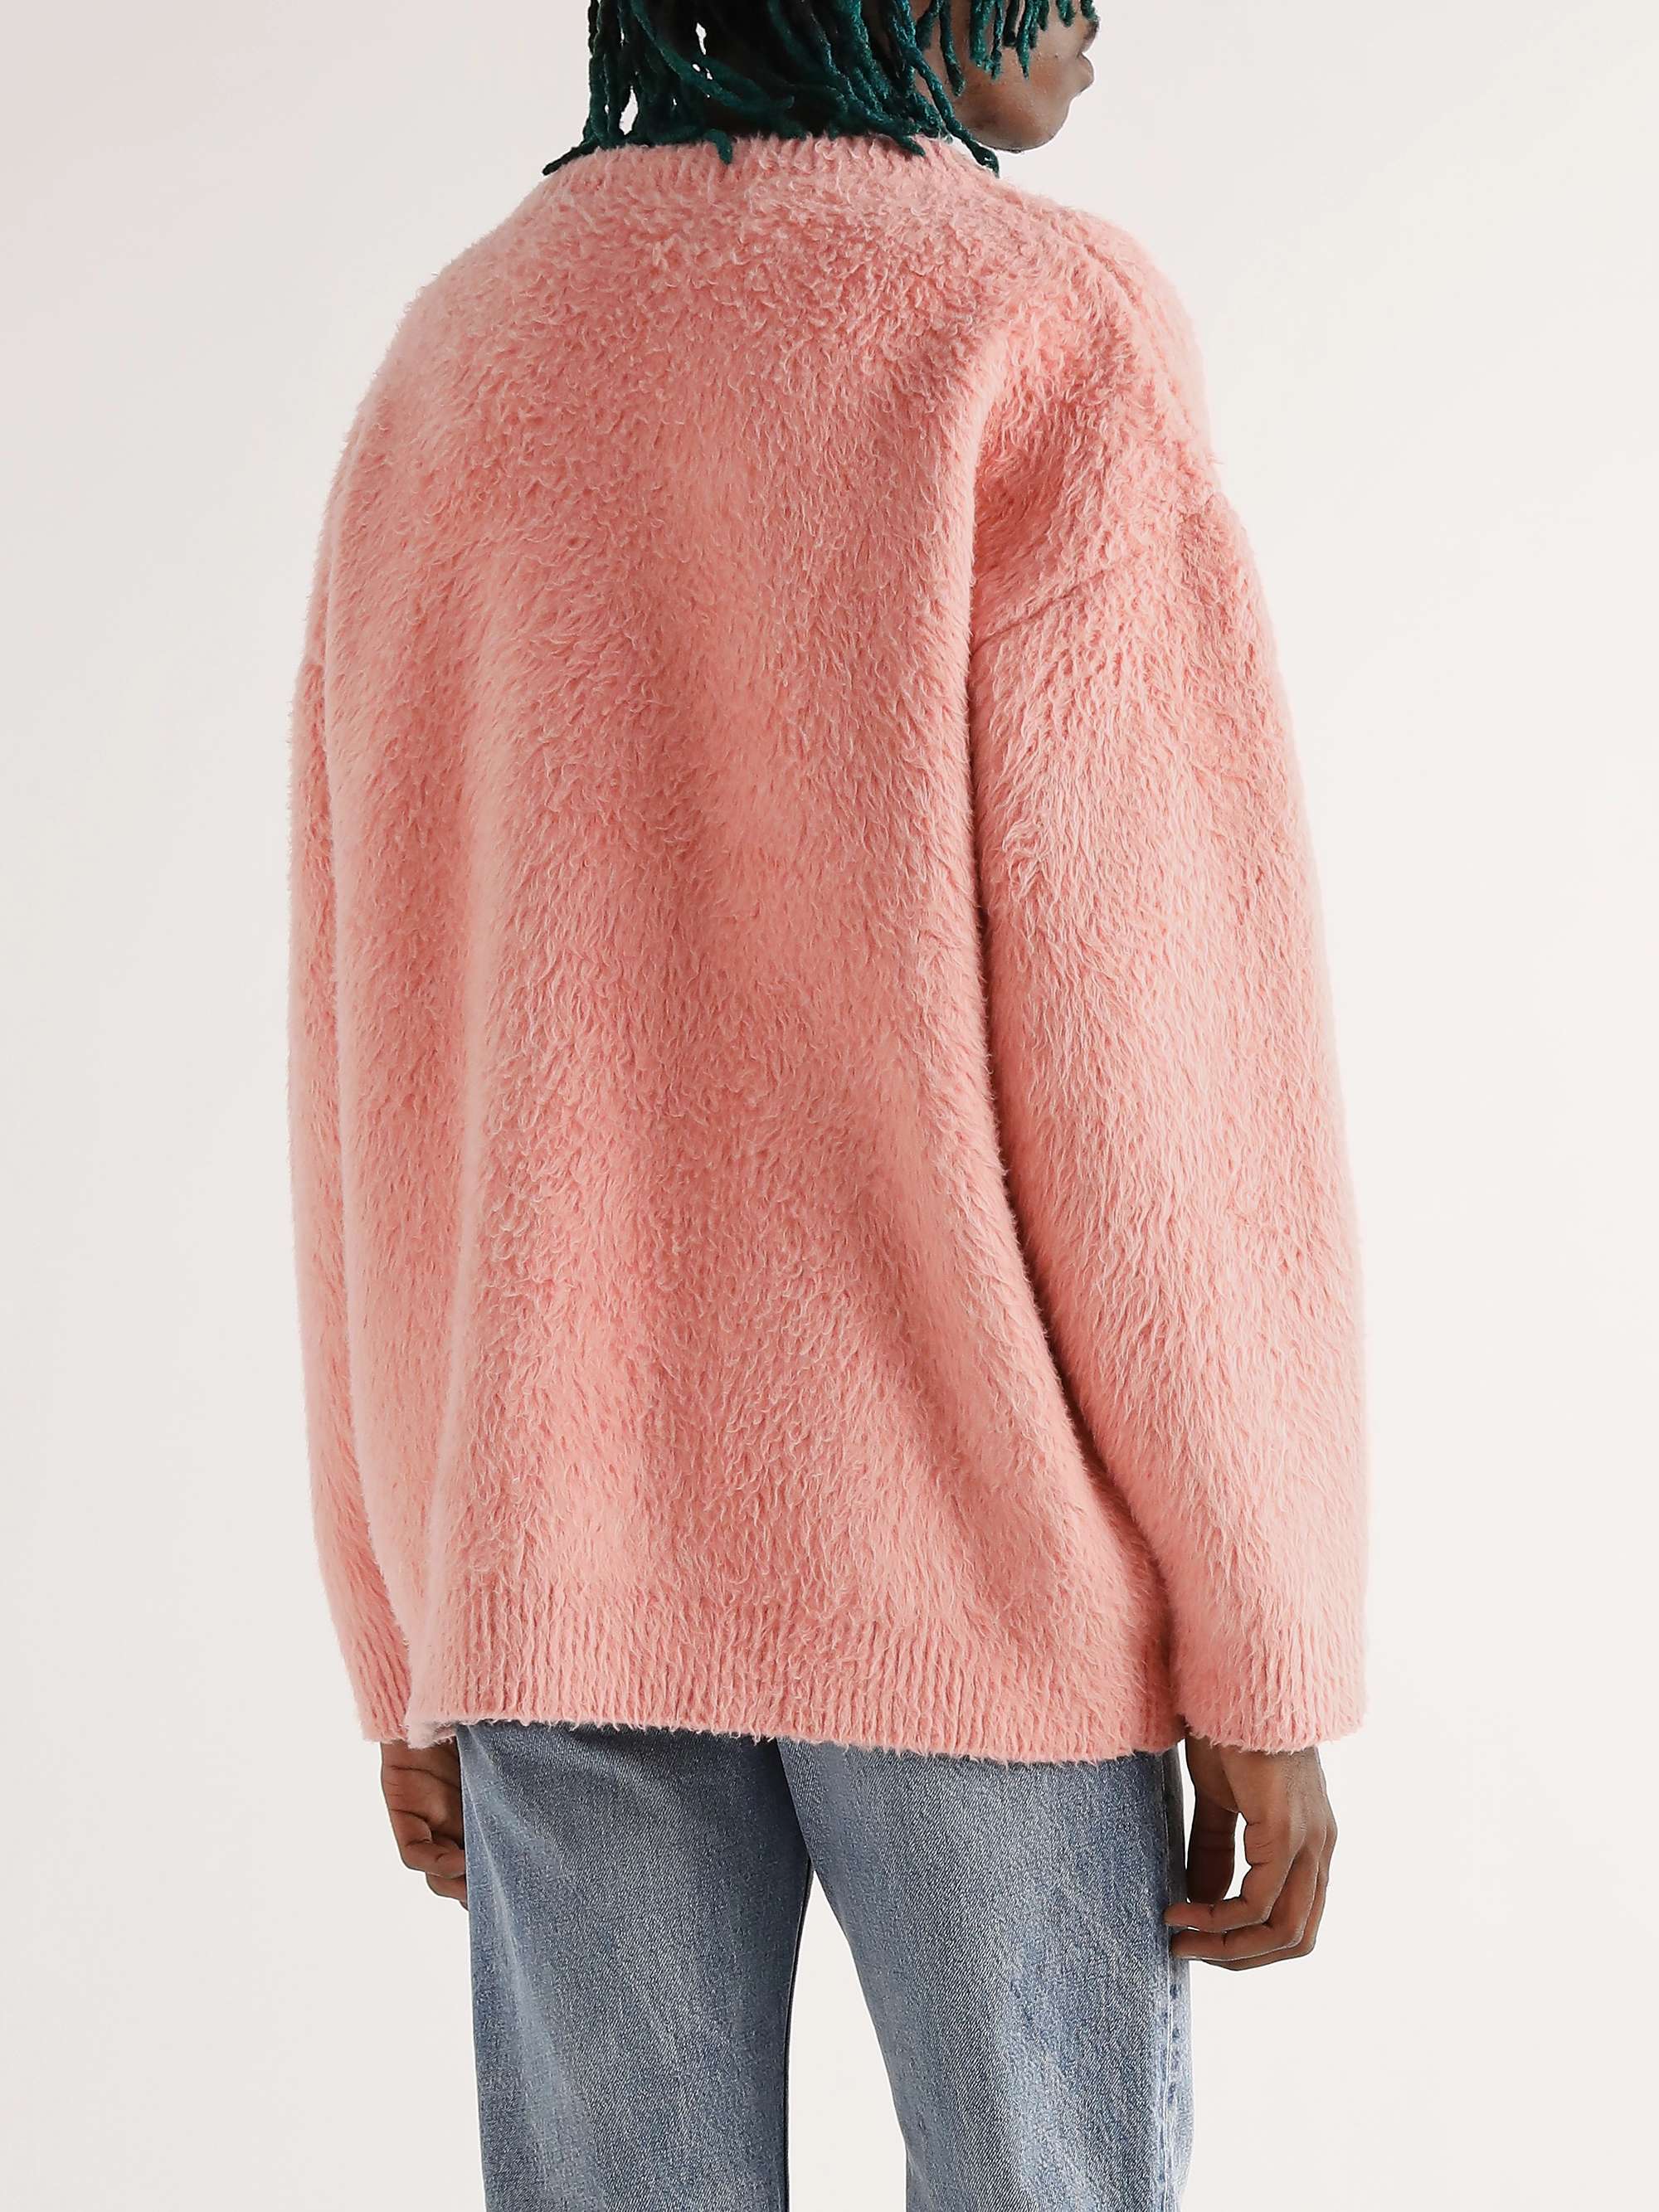 CELINE HOMME Brushed Cotton-Blend Jacquard Sweater